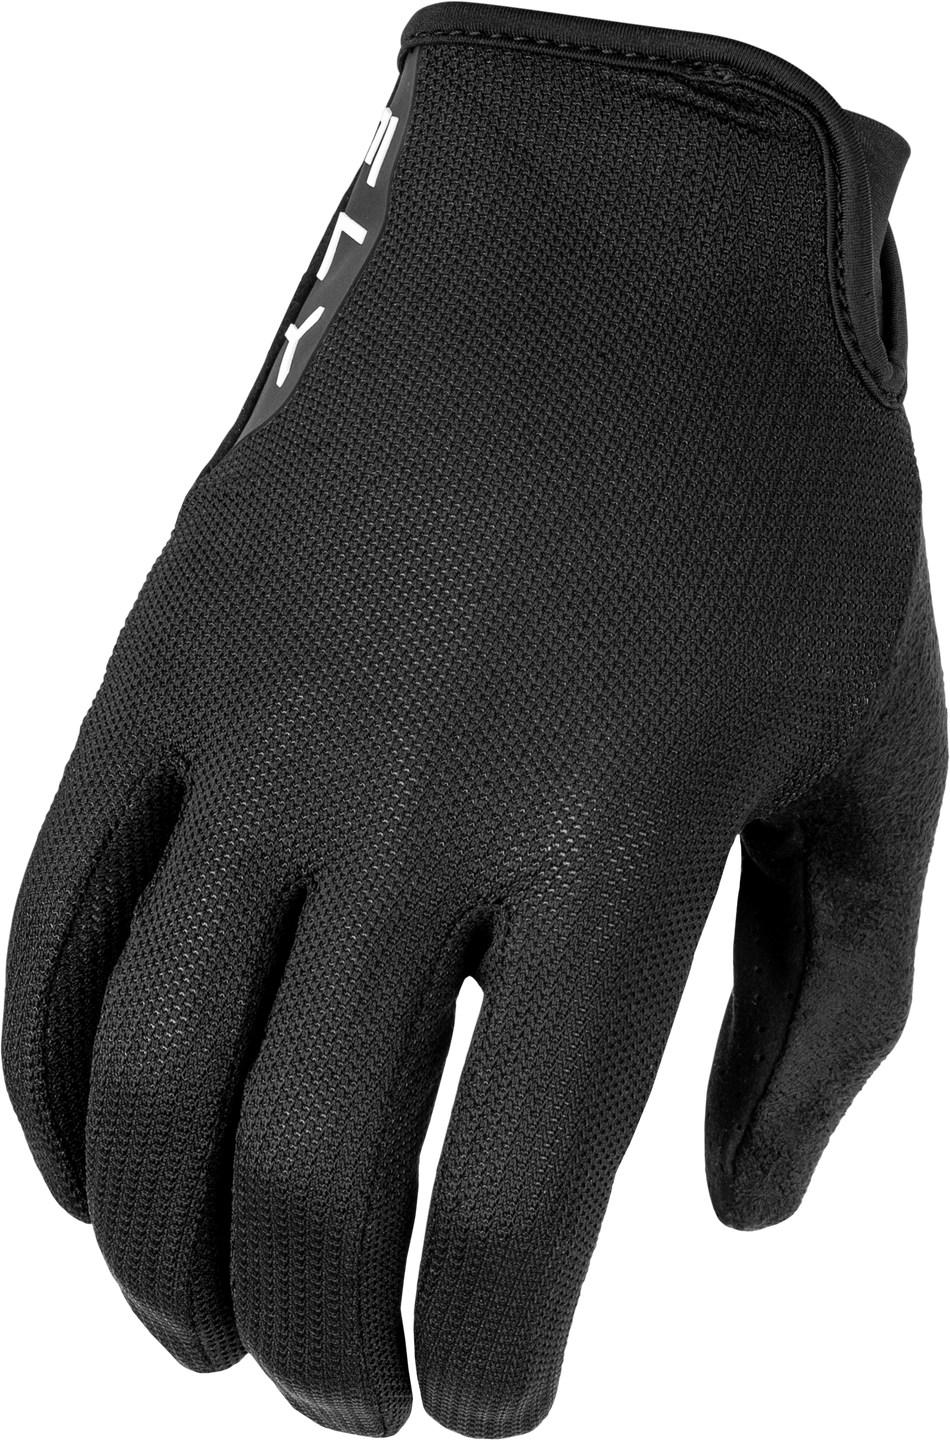 FLY RACING Mesh Gloves Black Xl 375-330X